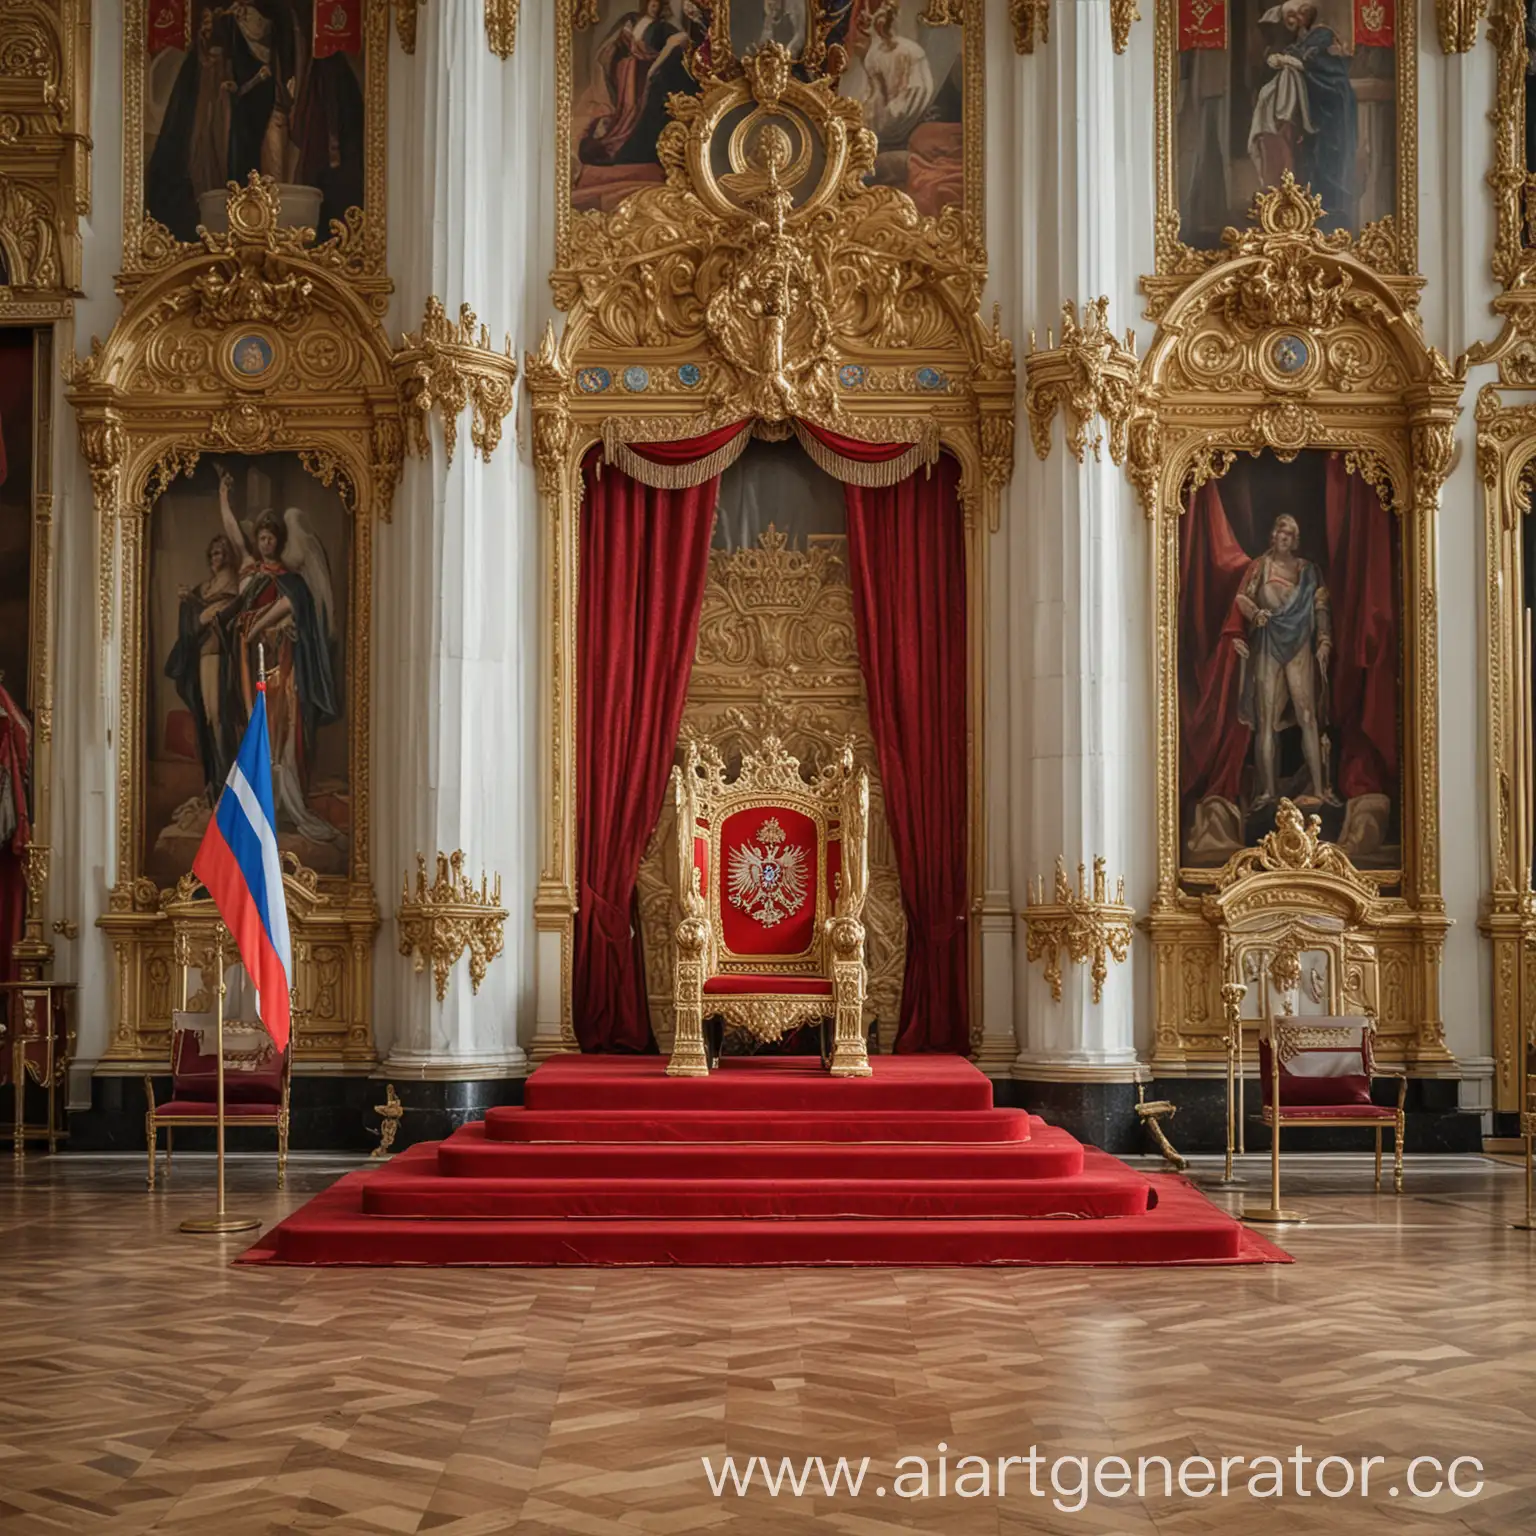 Трон в большом зале с флагом Российской Империи позади трона